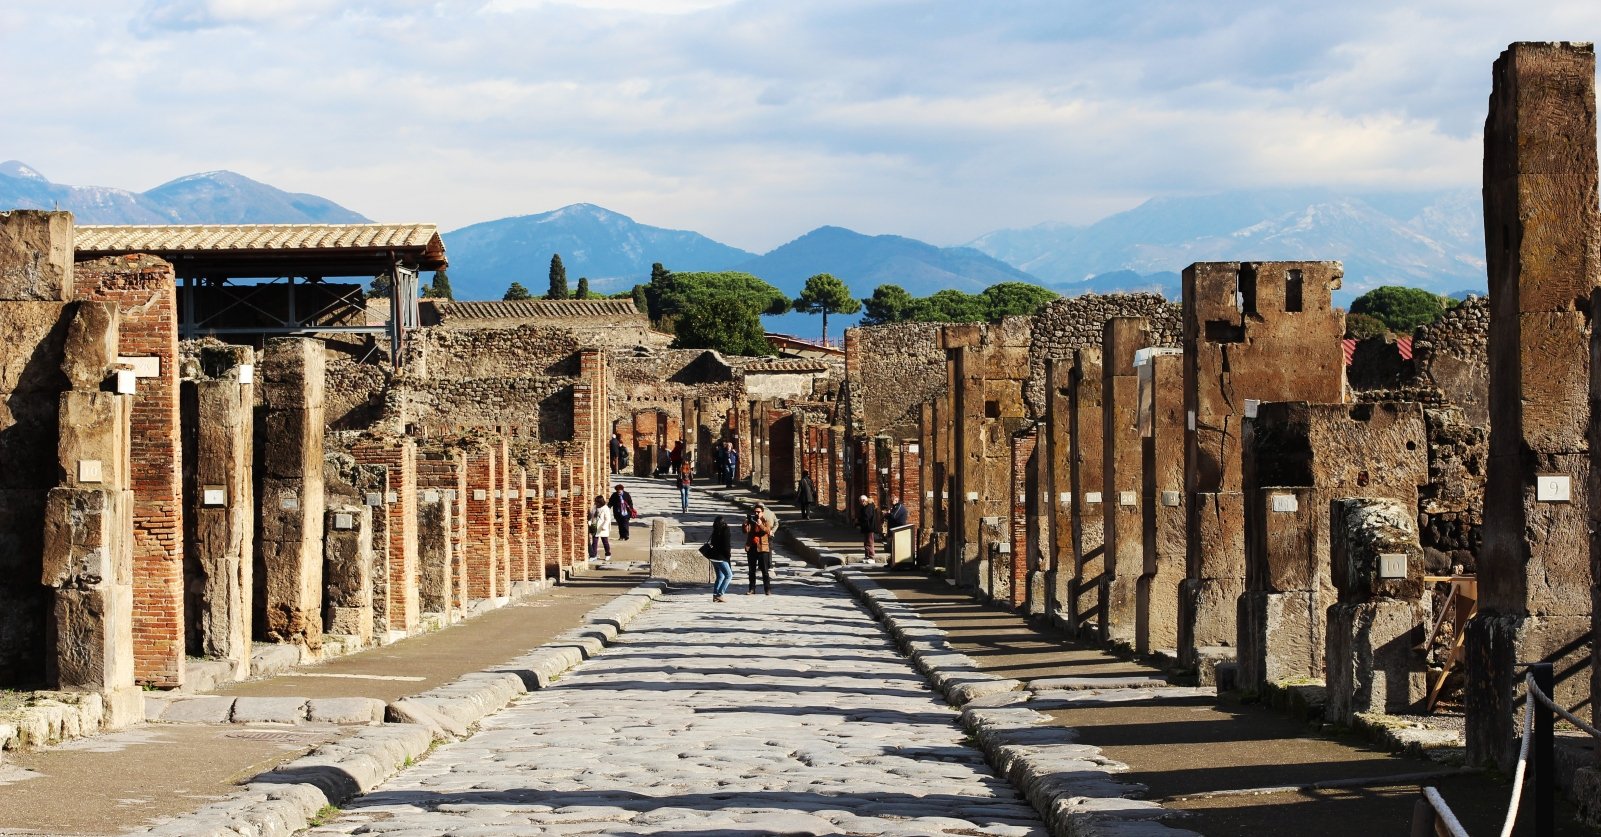 Parco archeologico di Pompei. Hai già passeggiato su Via dell'Abbondanza?